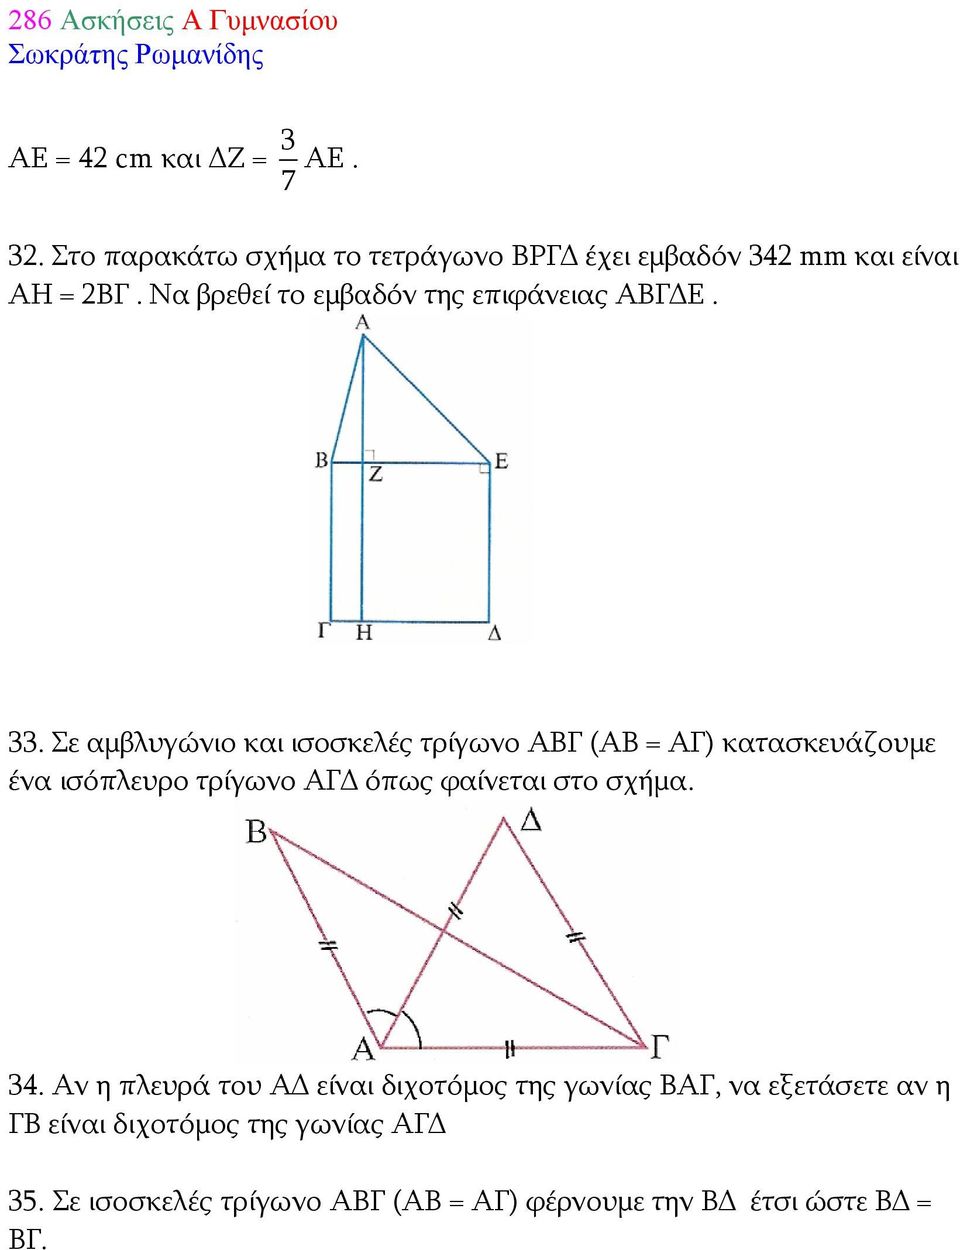 Σε αμβλυγώνιο και ισοσκελές τρίγωνο ΑΒΓ (ΑΒ = ΑΓ) κατασκευάζουμε ένα ισόπλευρο τρίγωνο ΑΓΔ όπως φαίνεται στο